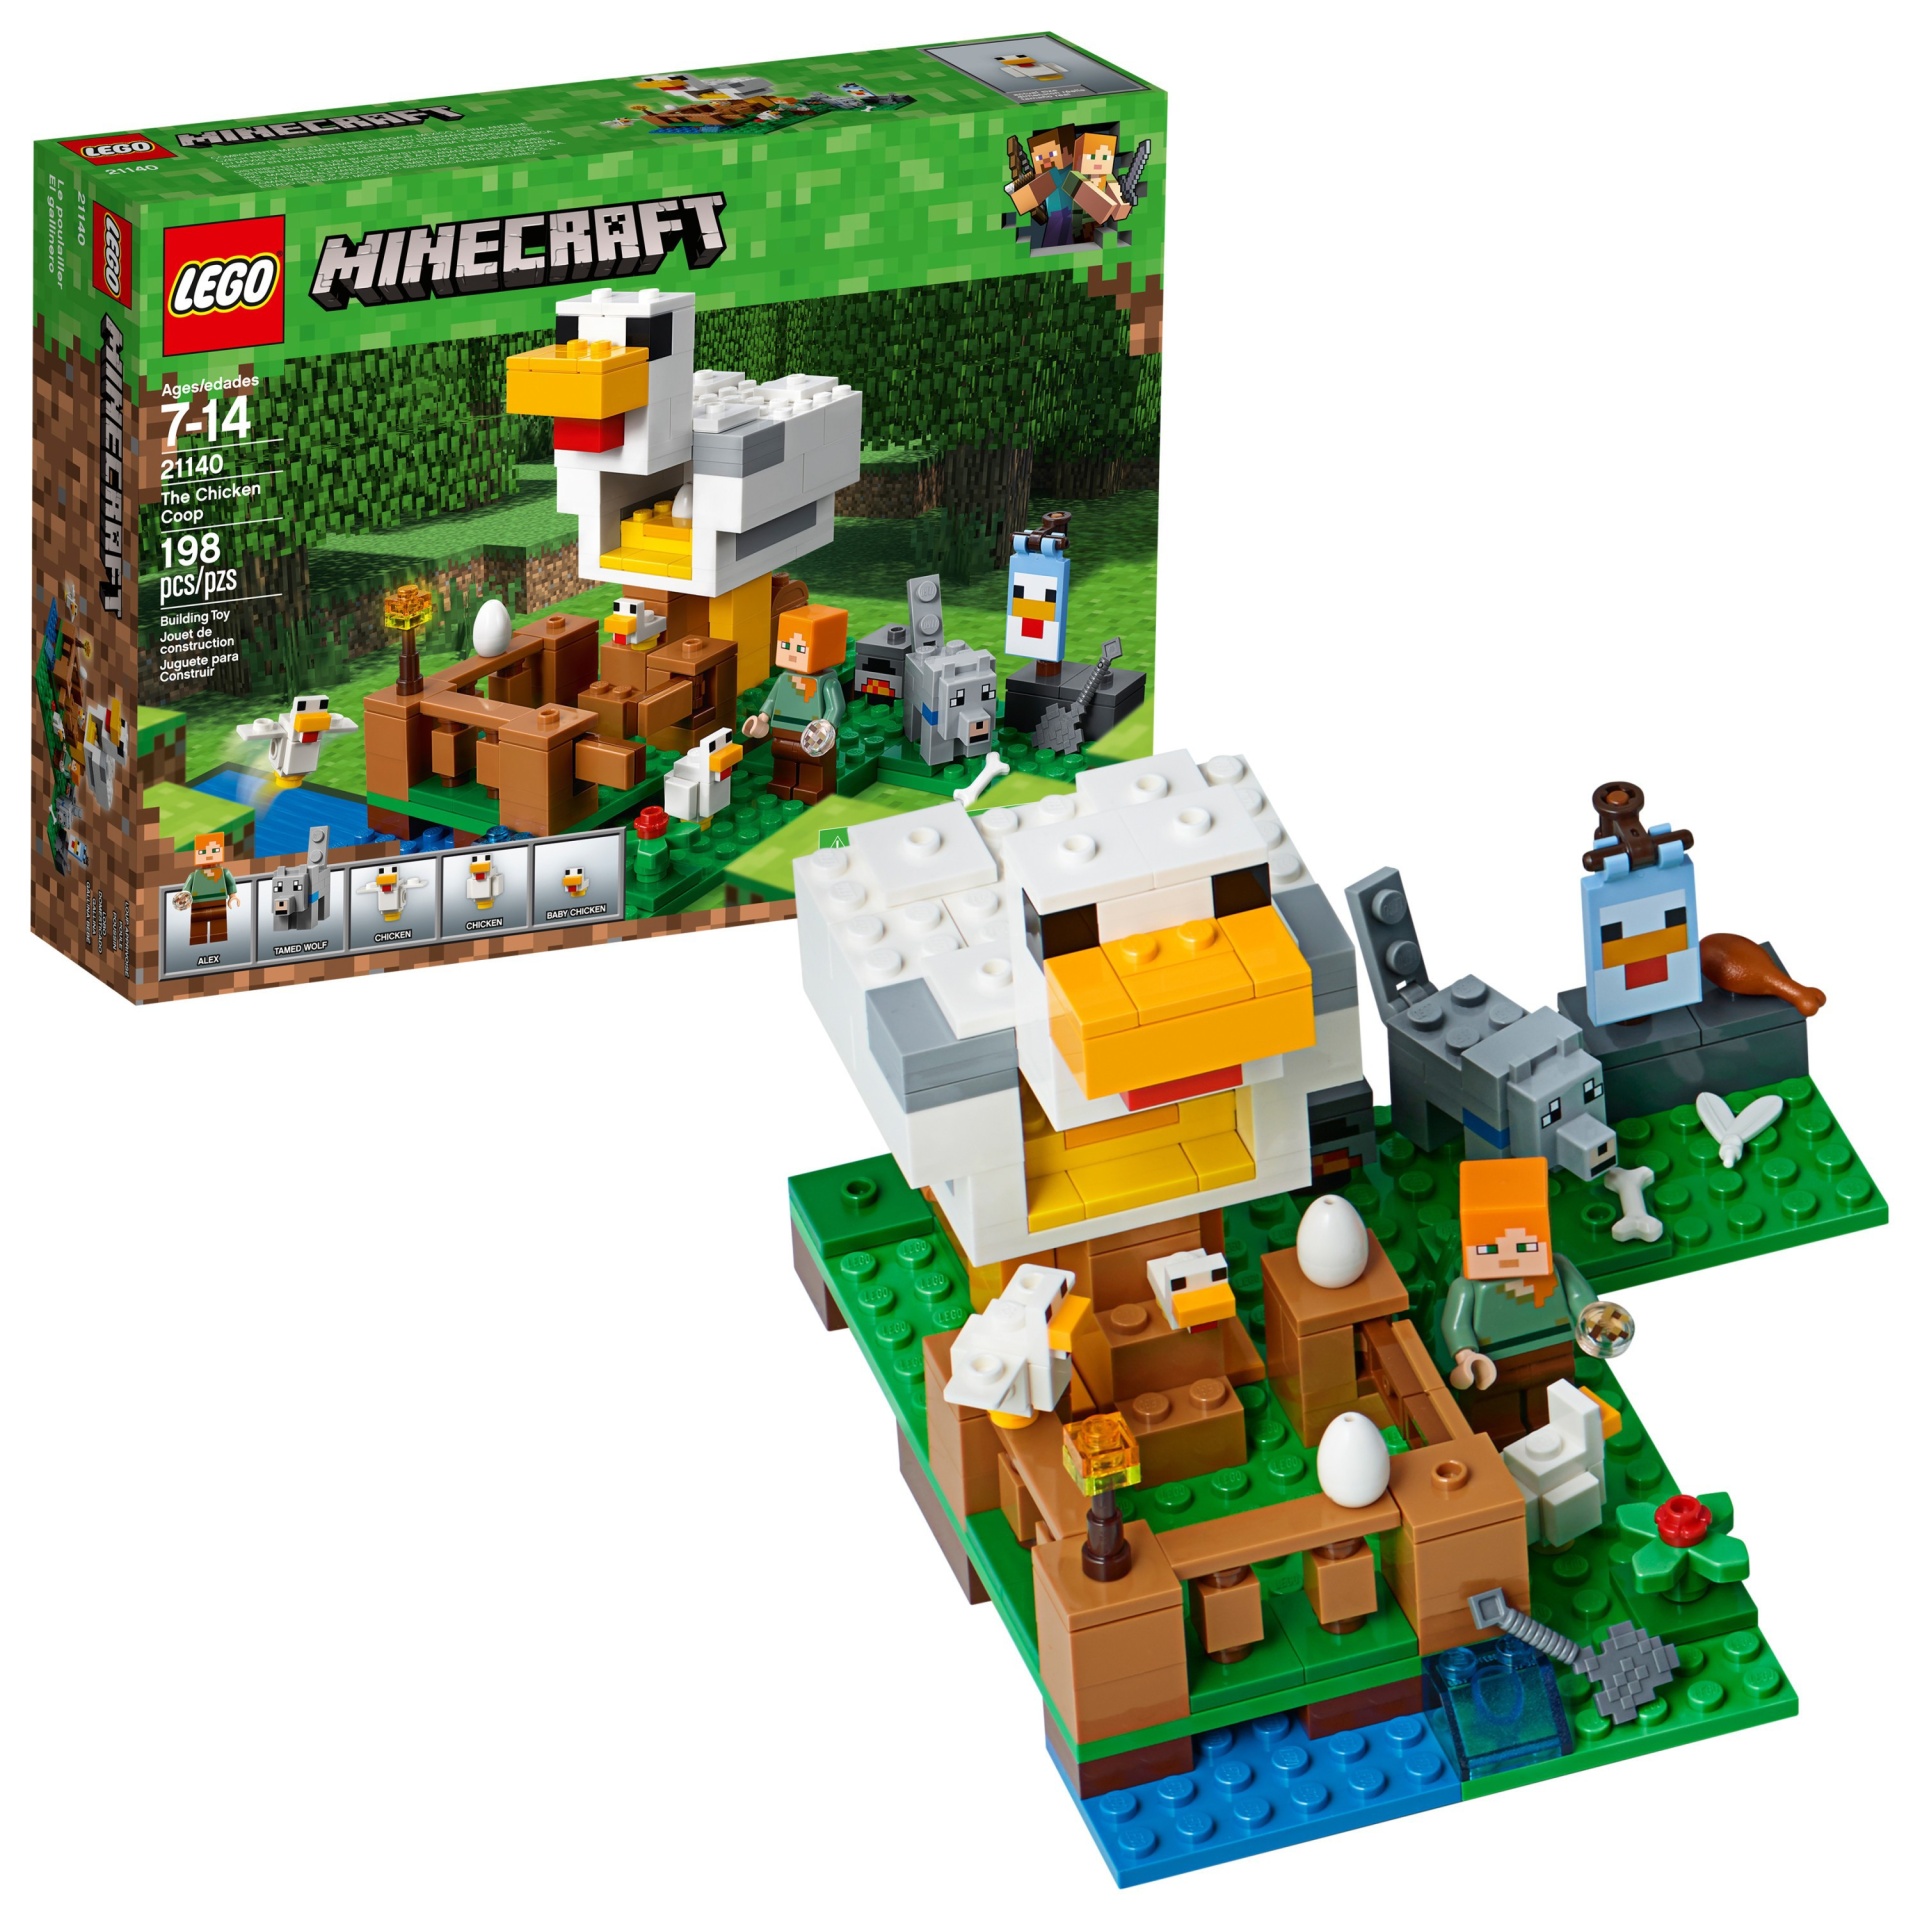 slide 1 of 6, LEGO Minecraft The Chicken Coop 21140, 1 ct